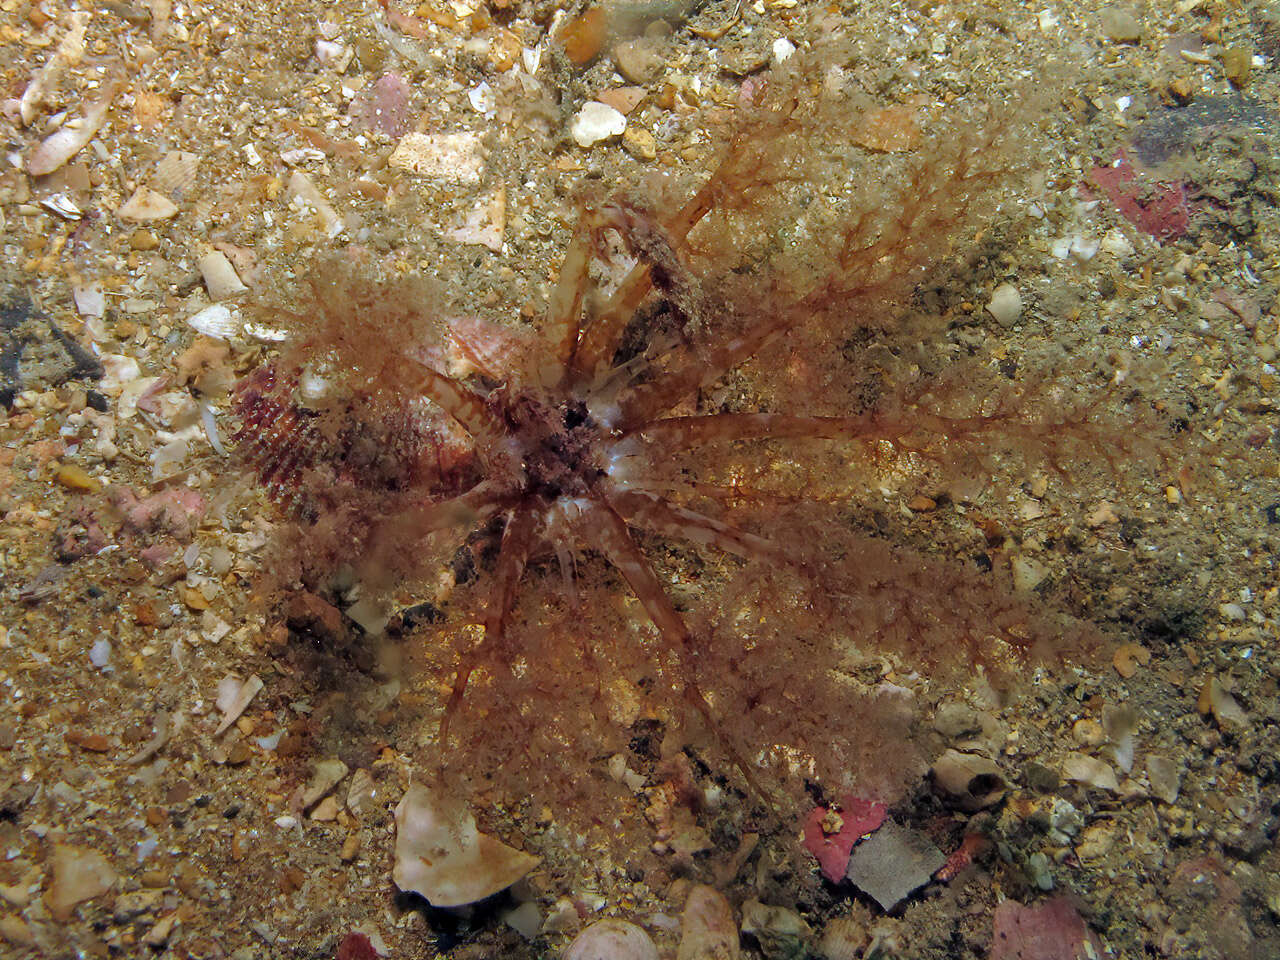 Image of gravel sea cucumber